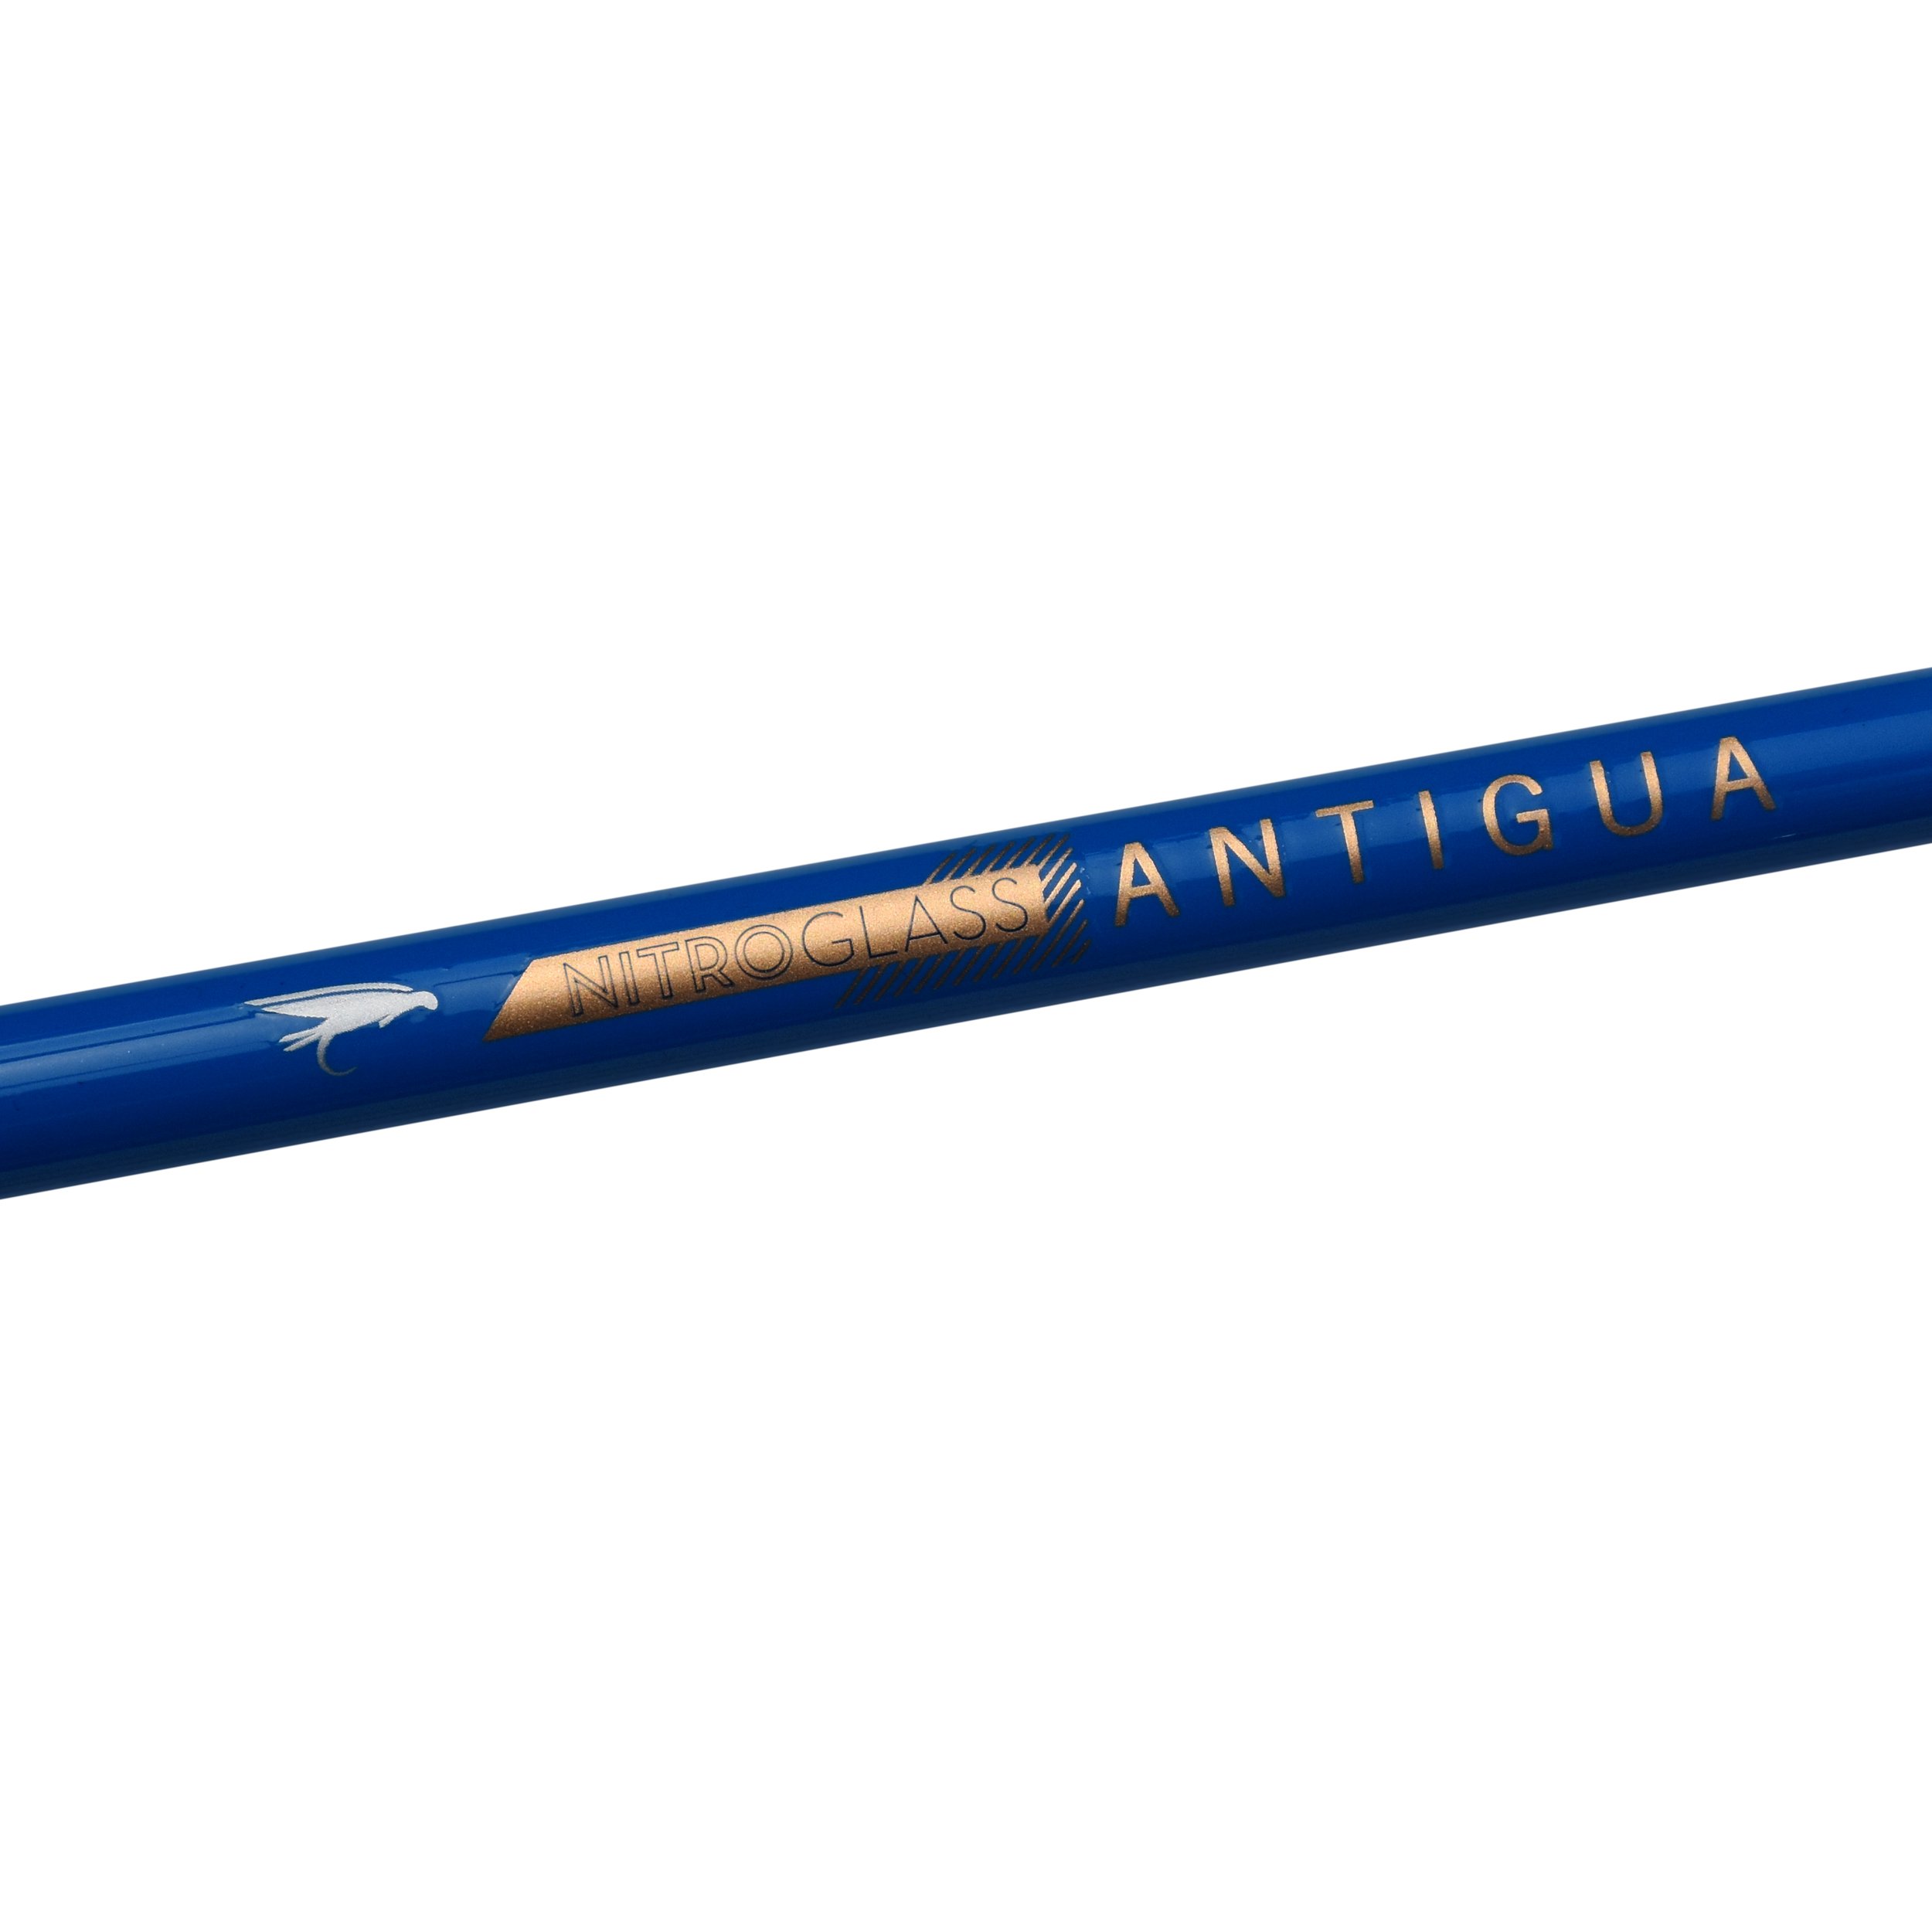 NitroGlass Antigua Fly Rod — WETFLY